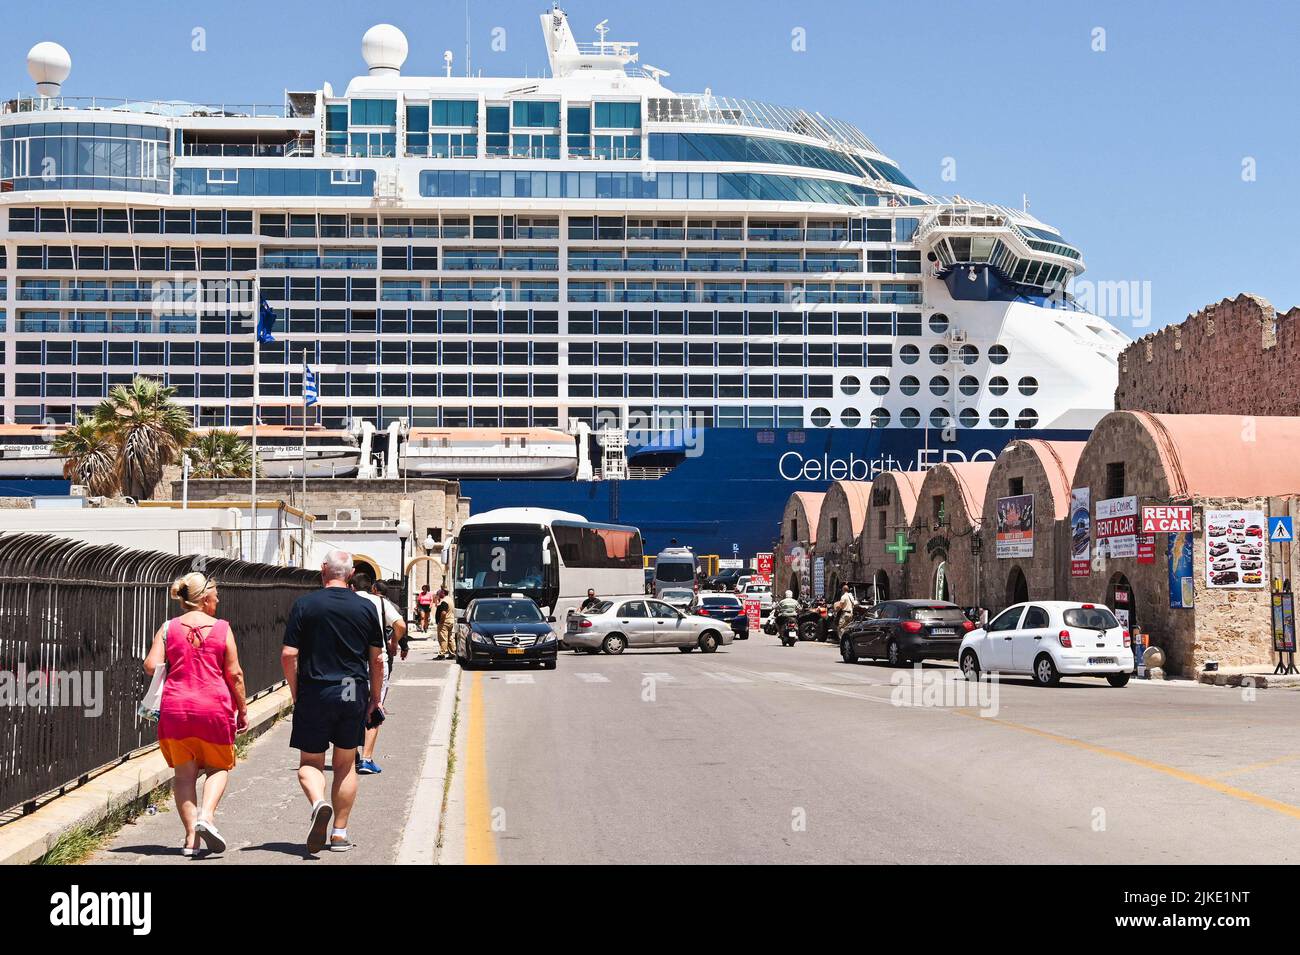 Rodas, Grecia - 2022 de mayo: Los pasajeros regresan al crucero Celebrity Edge después de visitar el Otwn de Rodas Foto de stock